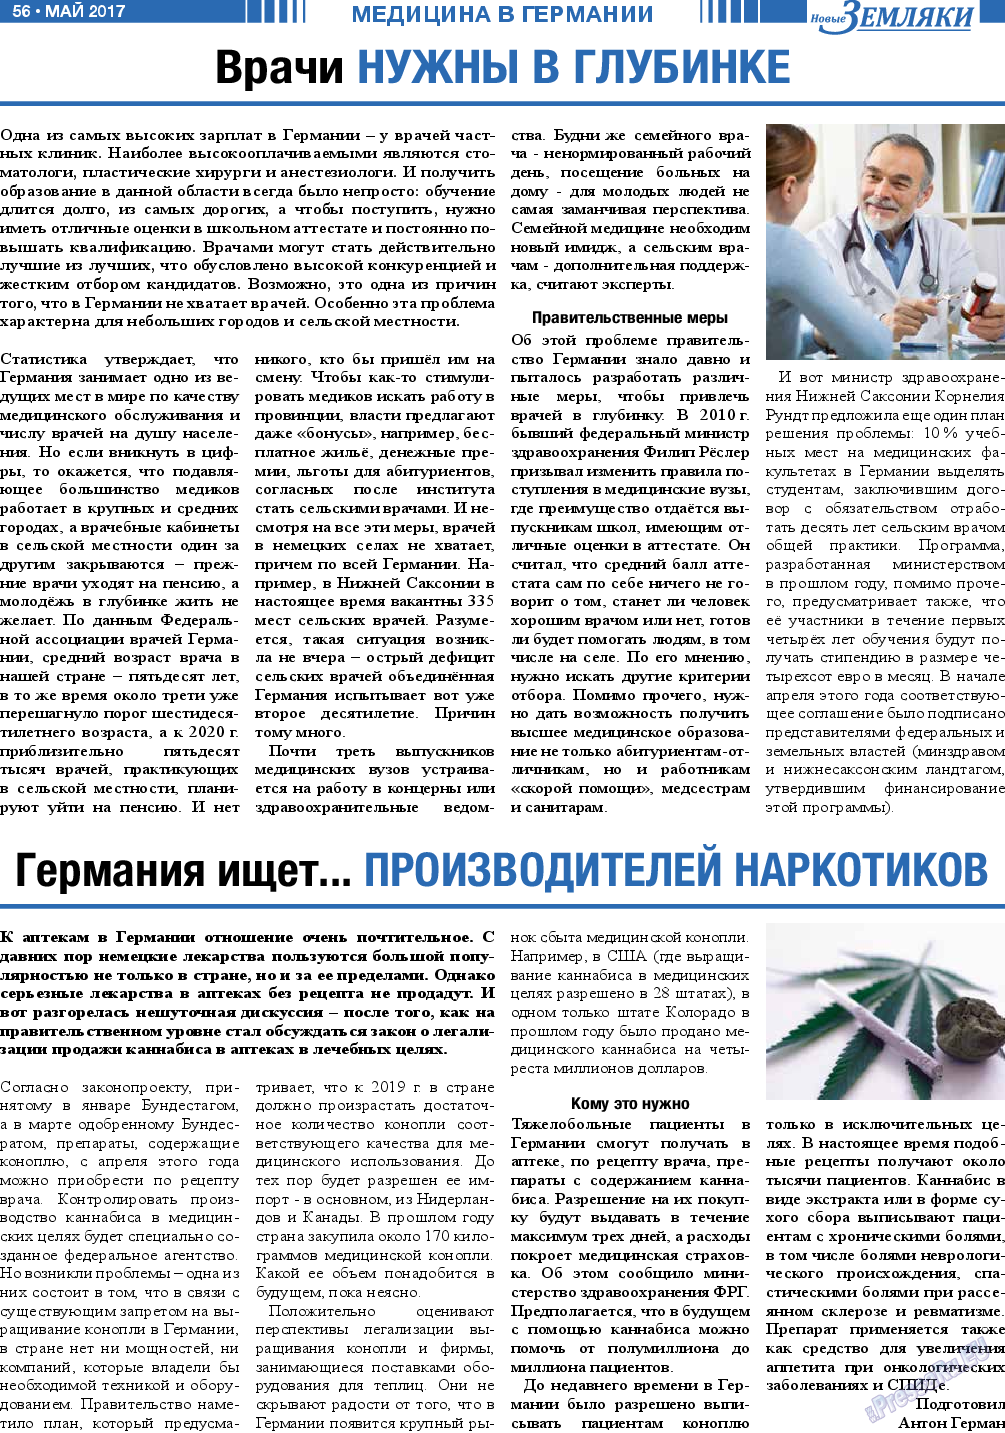 Новые Земляки, газета. 2017 №5 стр.56